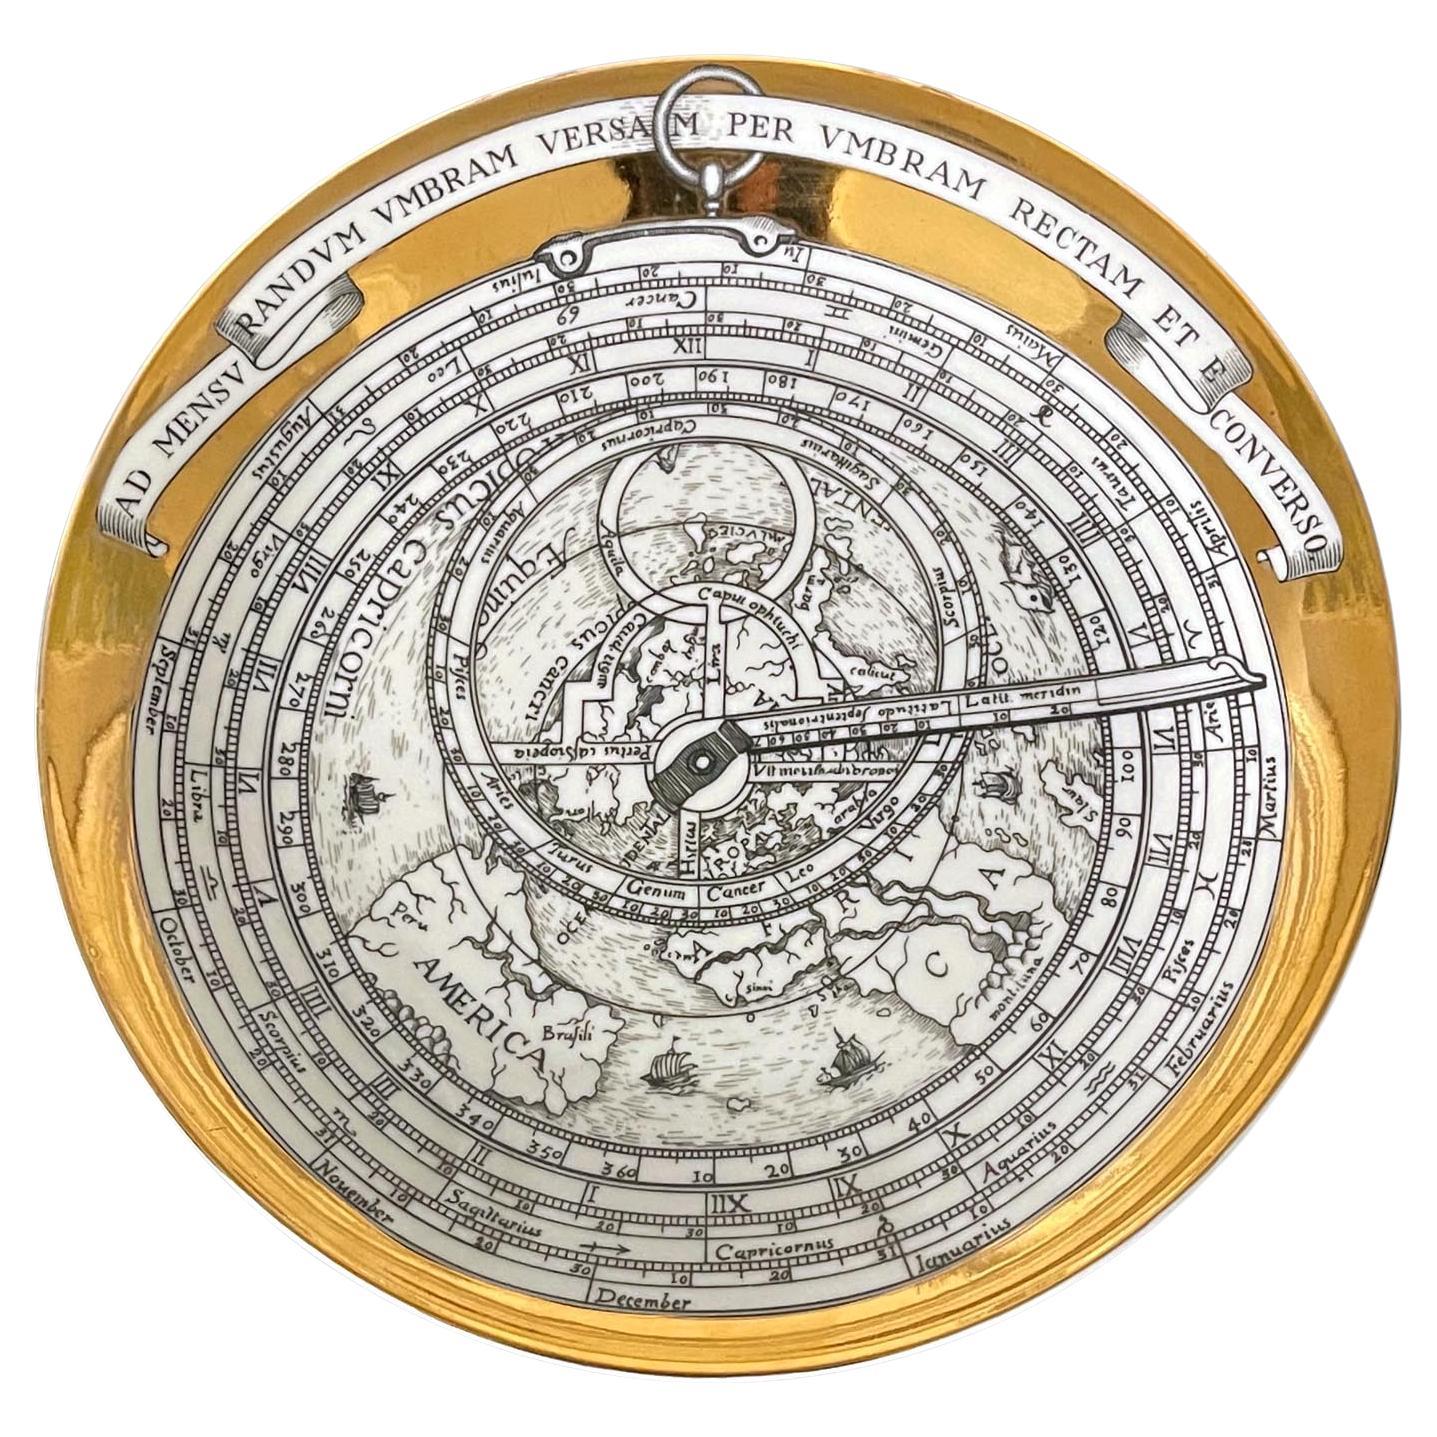 Piero Fornasetti Astrolabe Porcelain Plate 1968